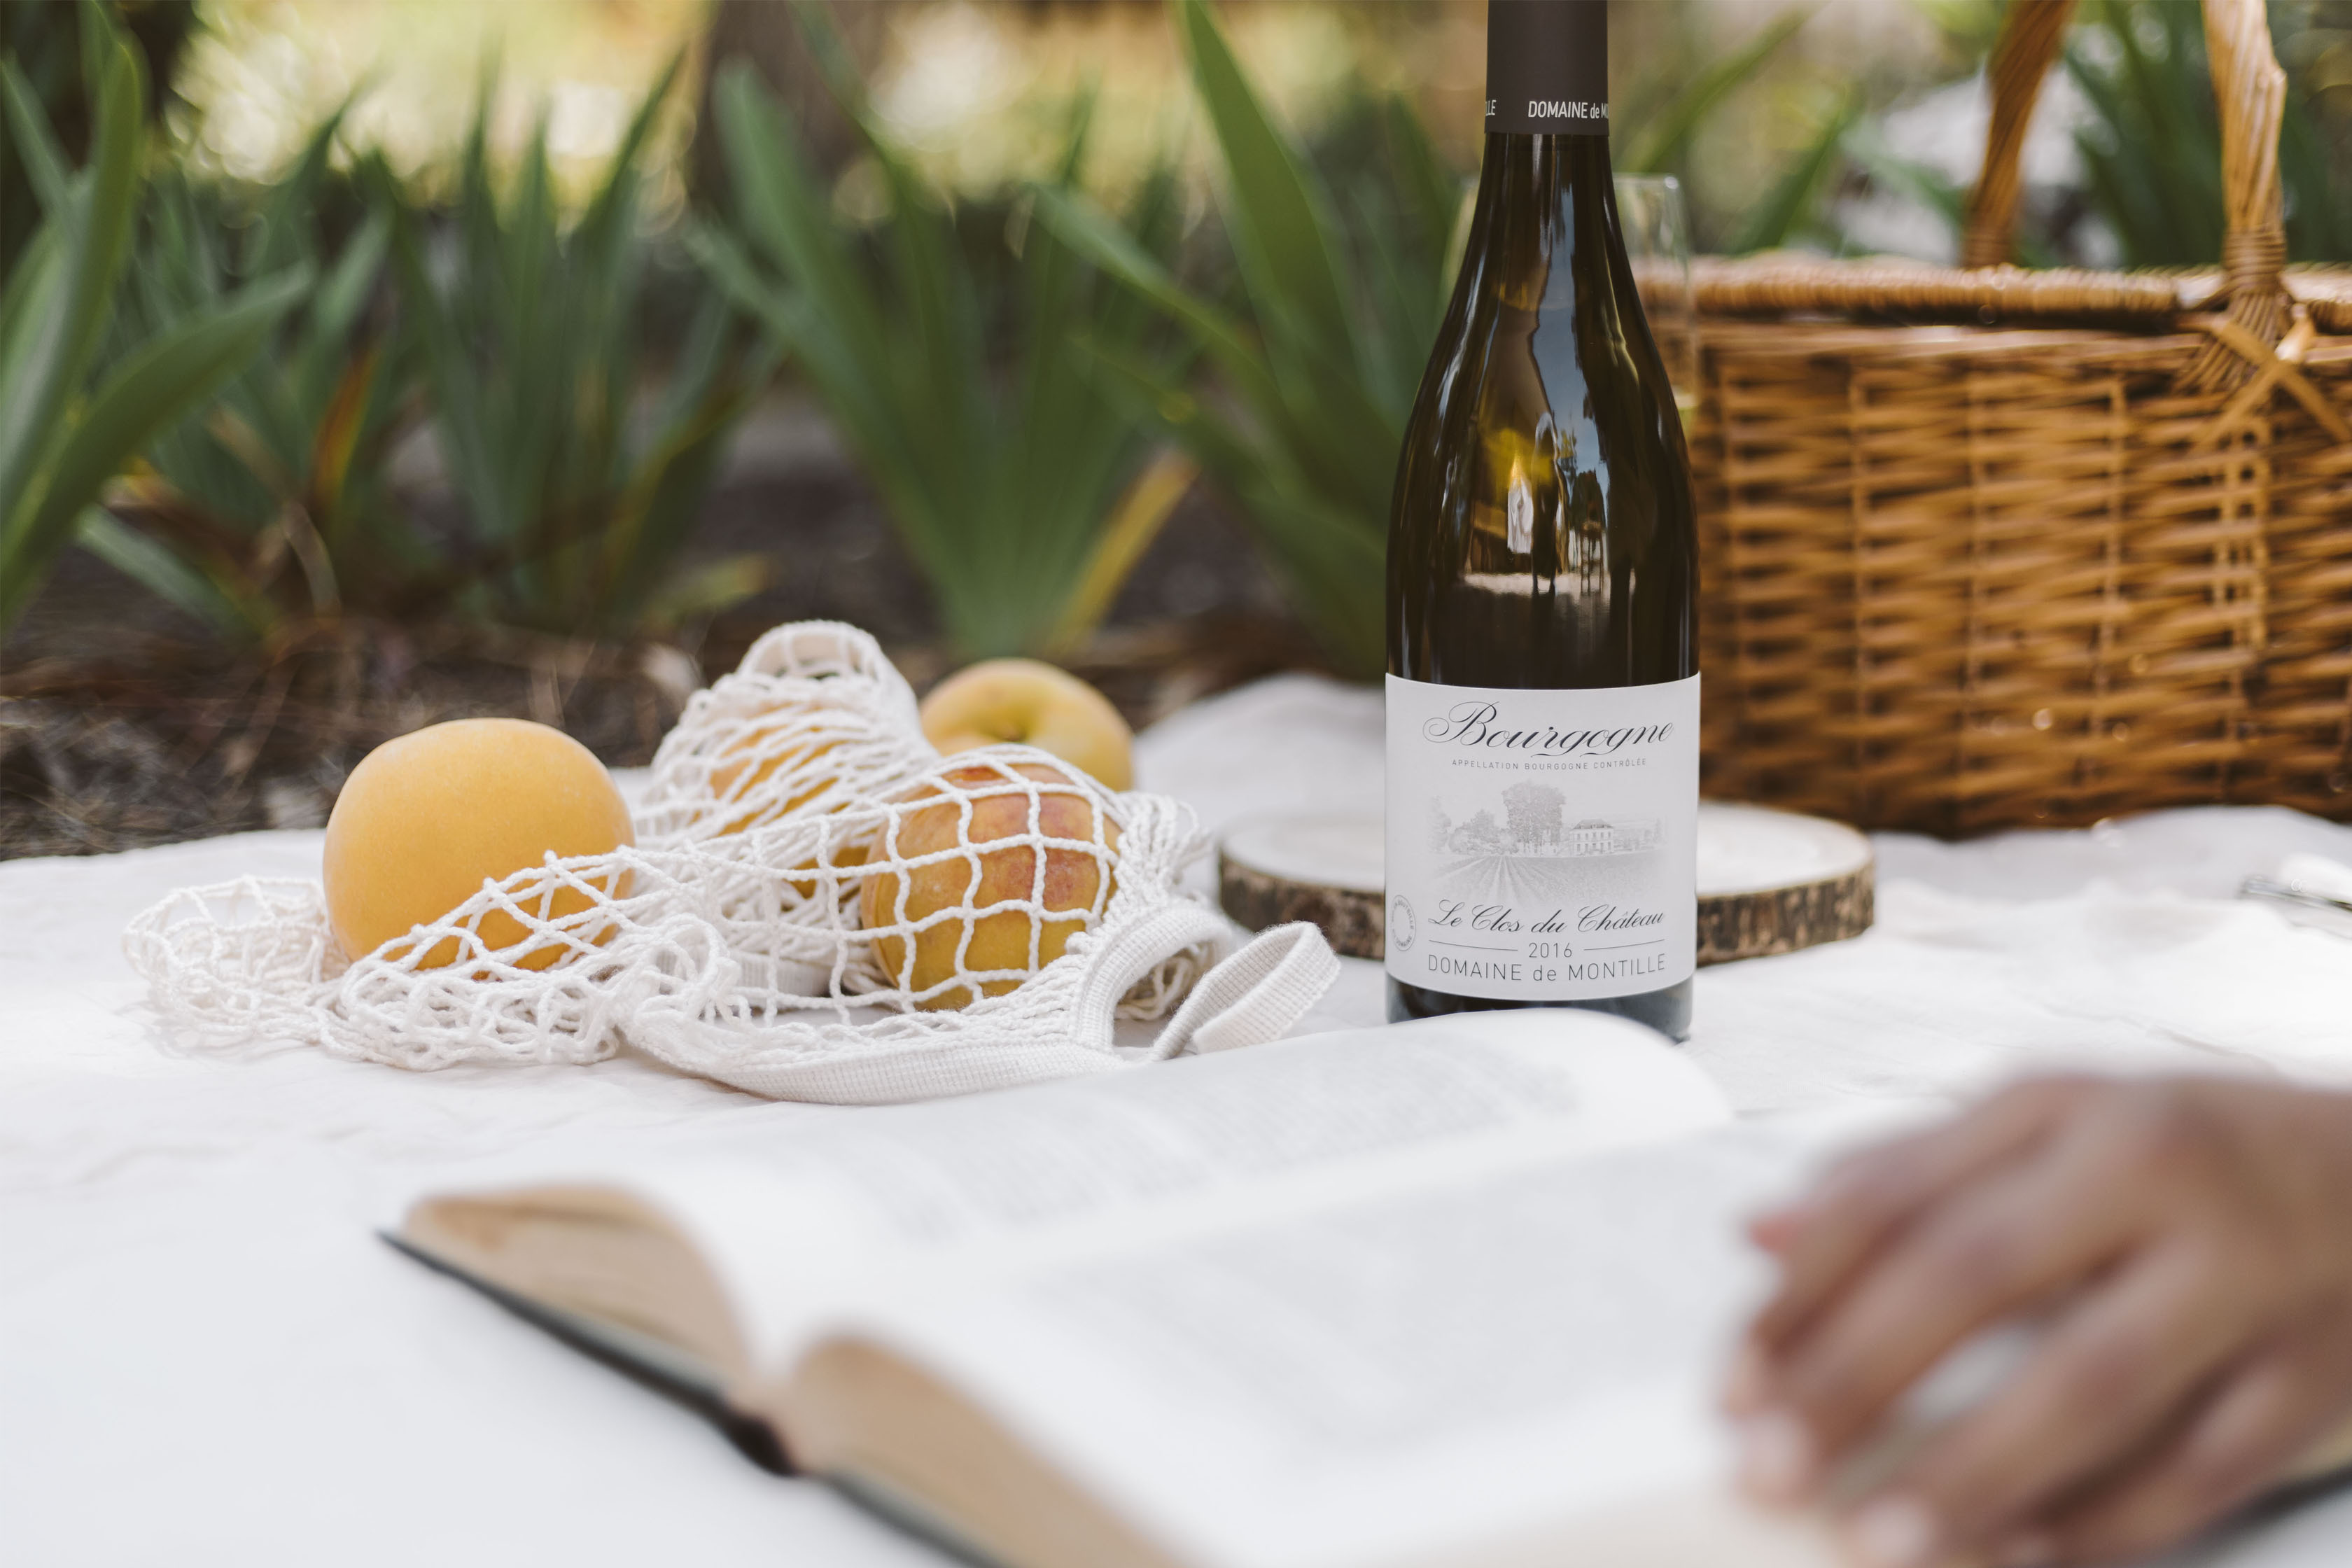 Leer más: La Chardonnay de Domaine de Montille